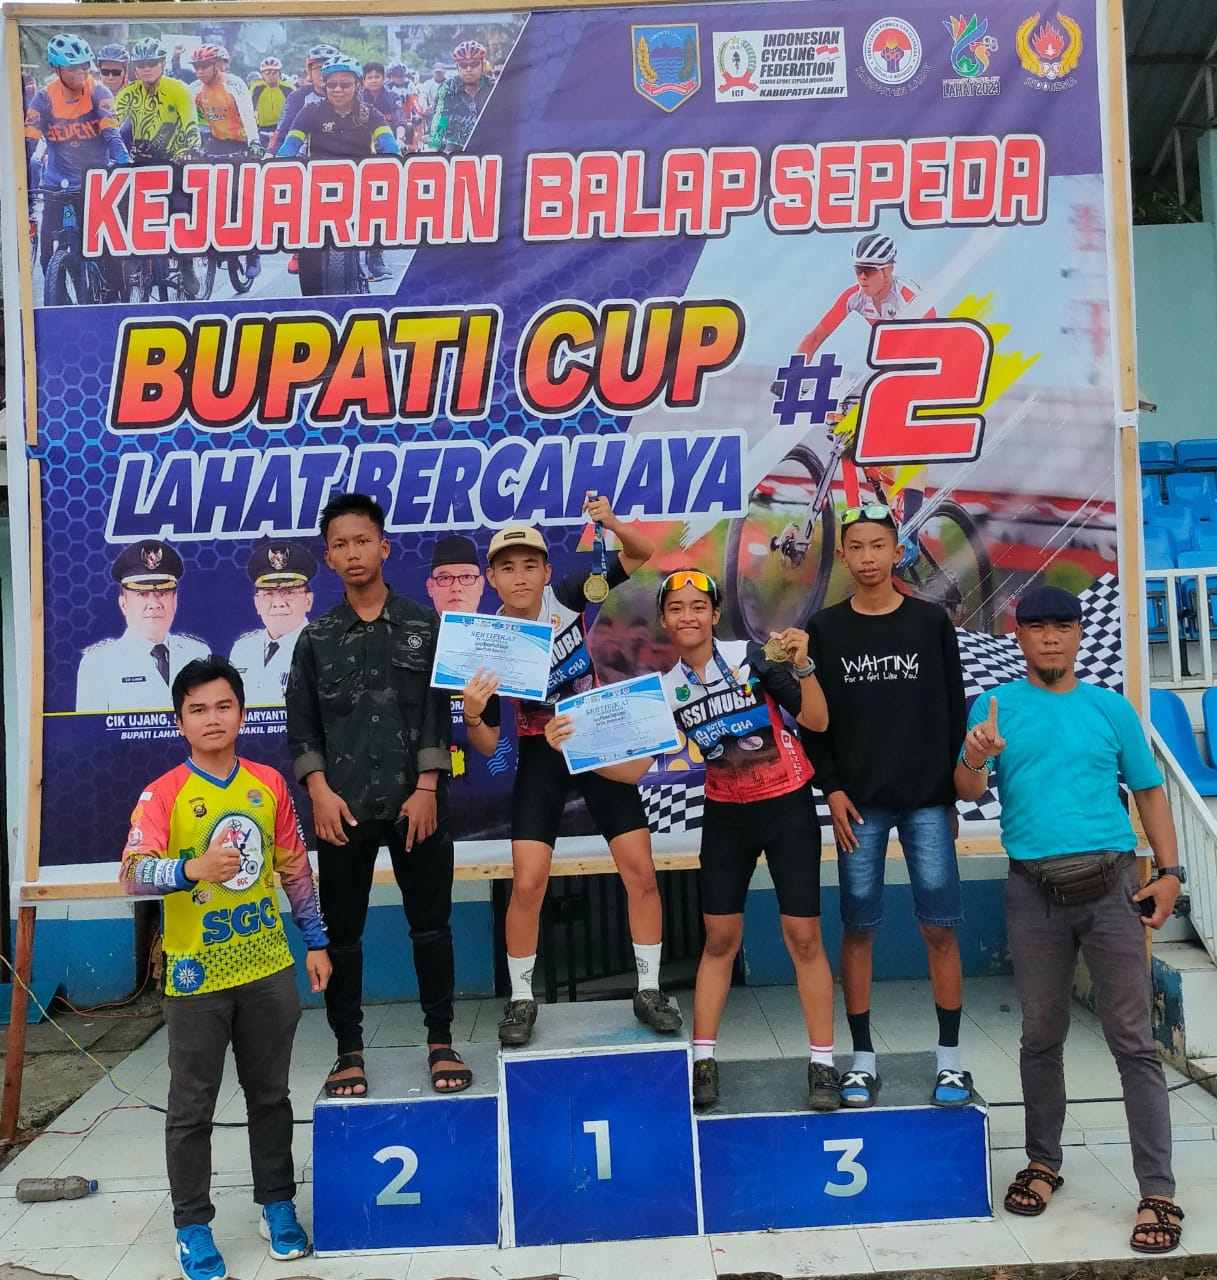 Atlet Balap Sepeda Muba Raih Juara 1 Women Open XCC, Event Bupati Cup Lahat Bercahaya 2022